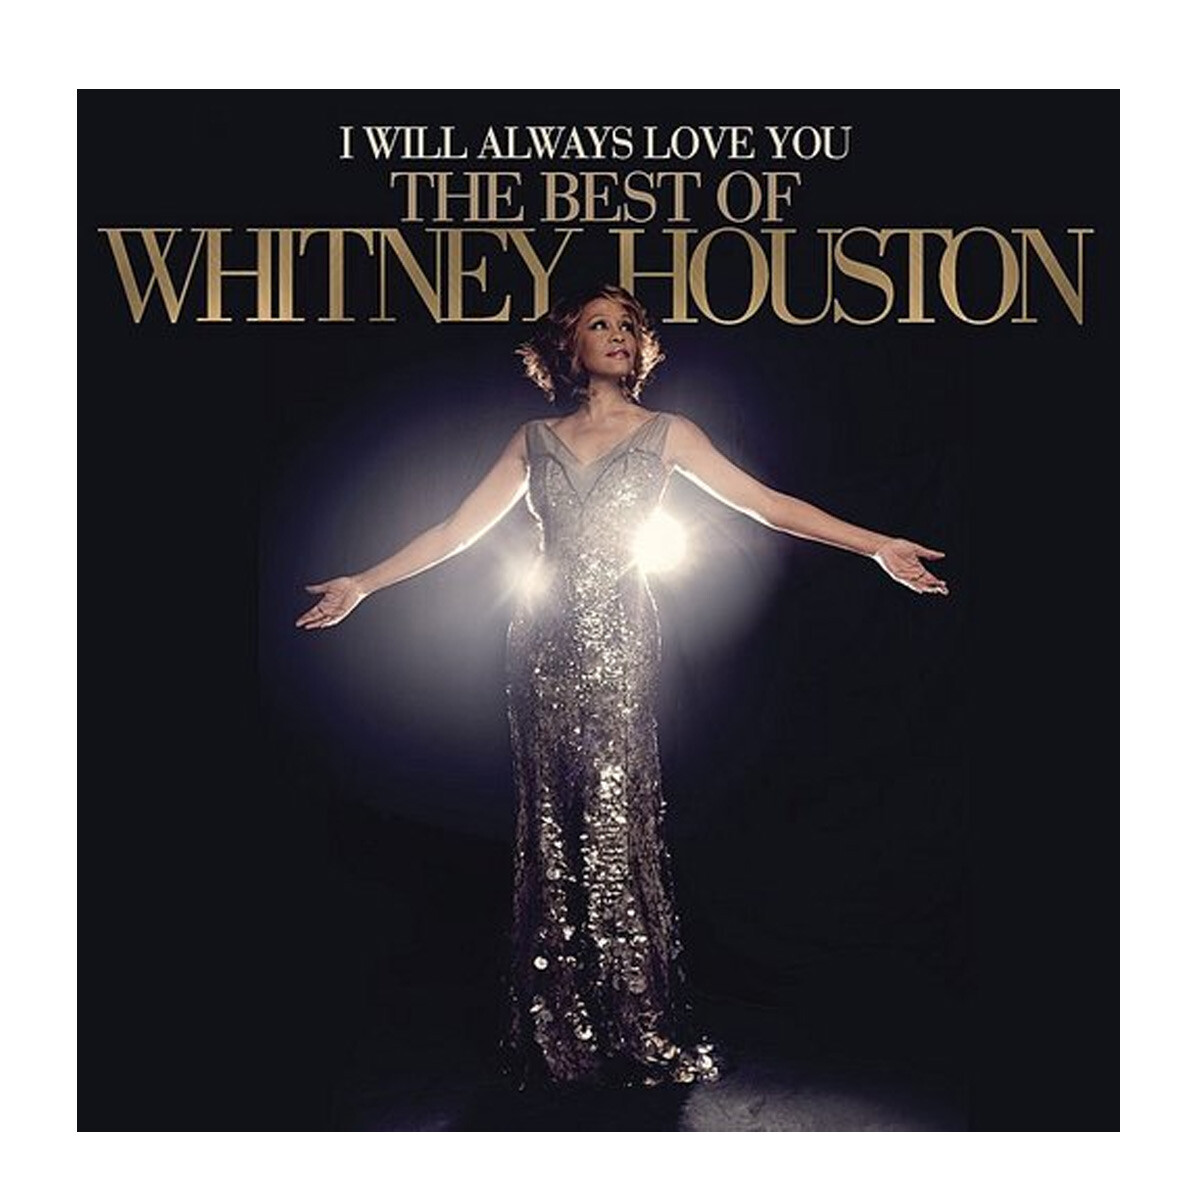 Houston, Whitney - I Will Always Love You - Best Of Whitney Houston 